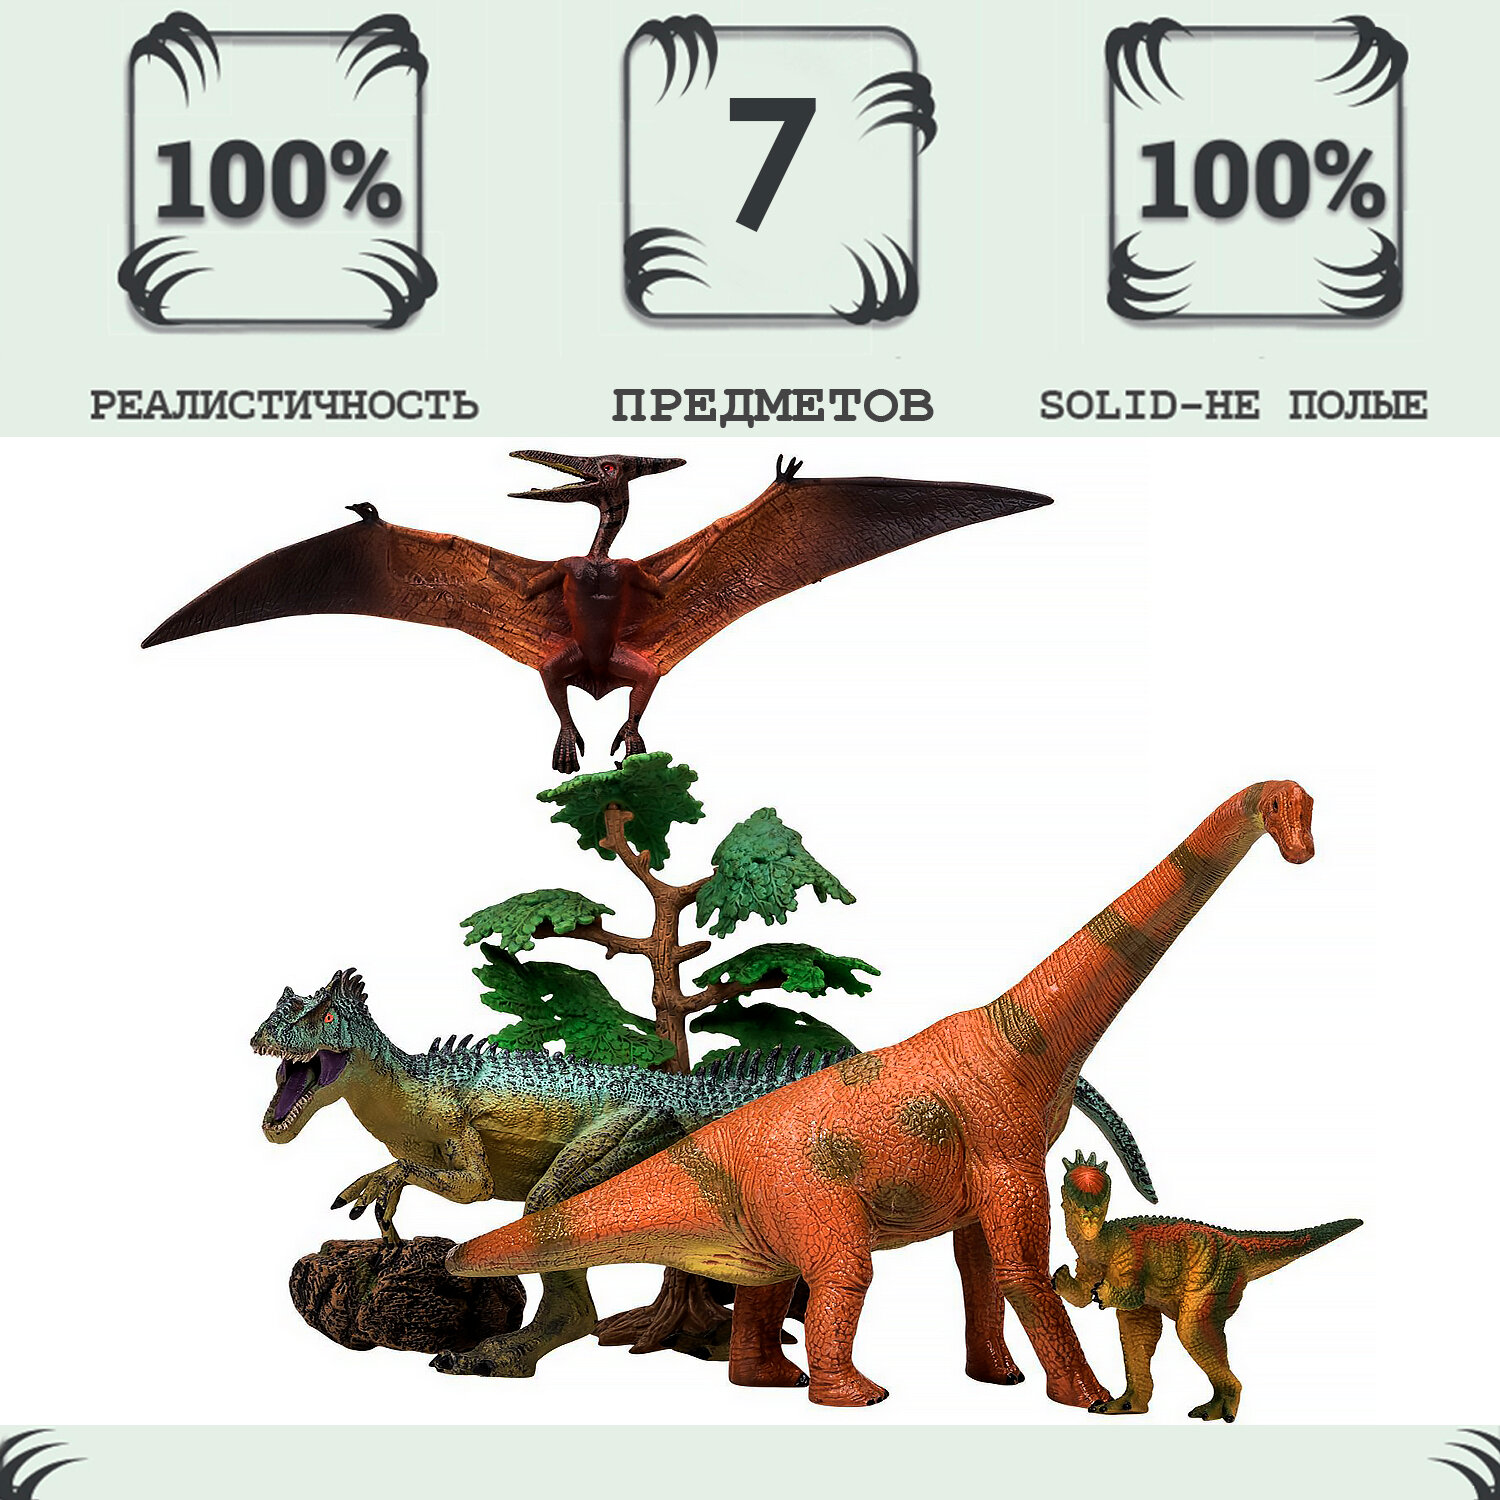 Динозавры и драконы для детей серии "Мир динозавров": птеродактиль, брахиозавр, аллозавр, пахицефалозавр (набор фигурок из 7 предметов)